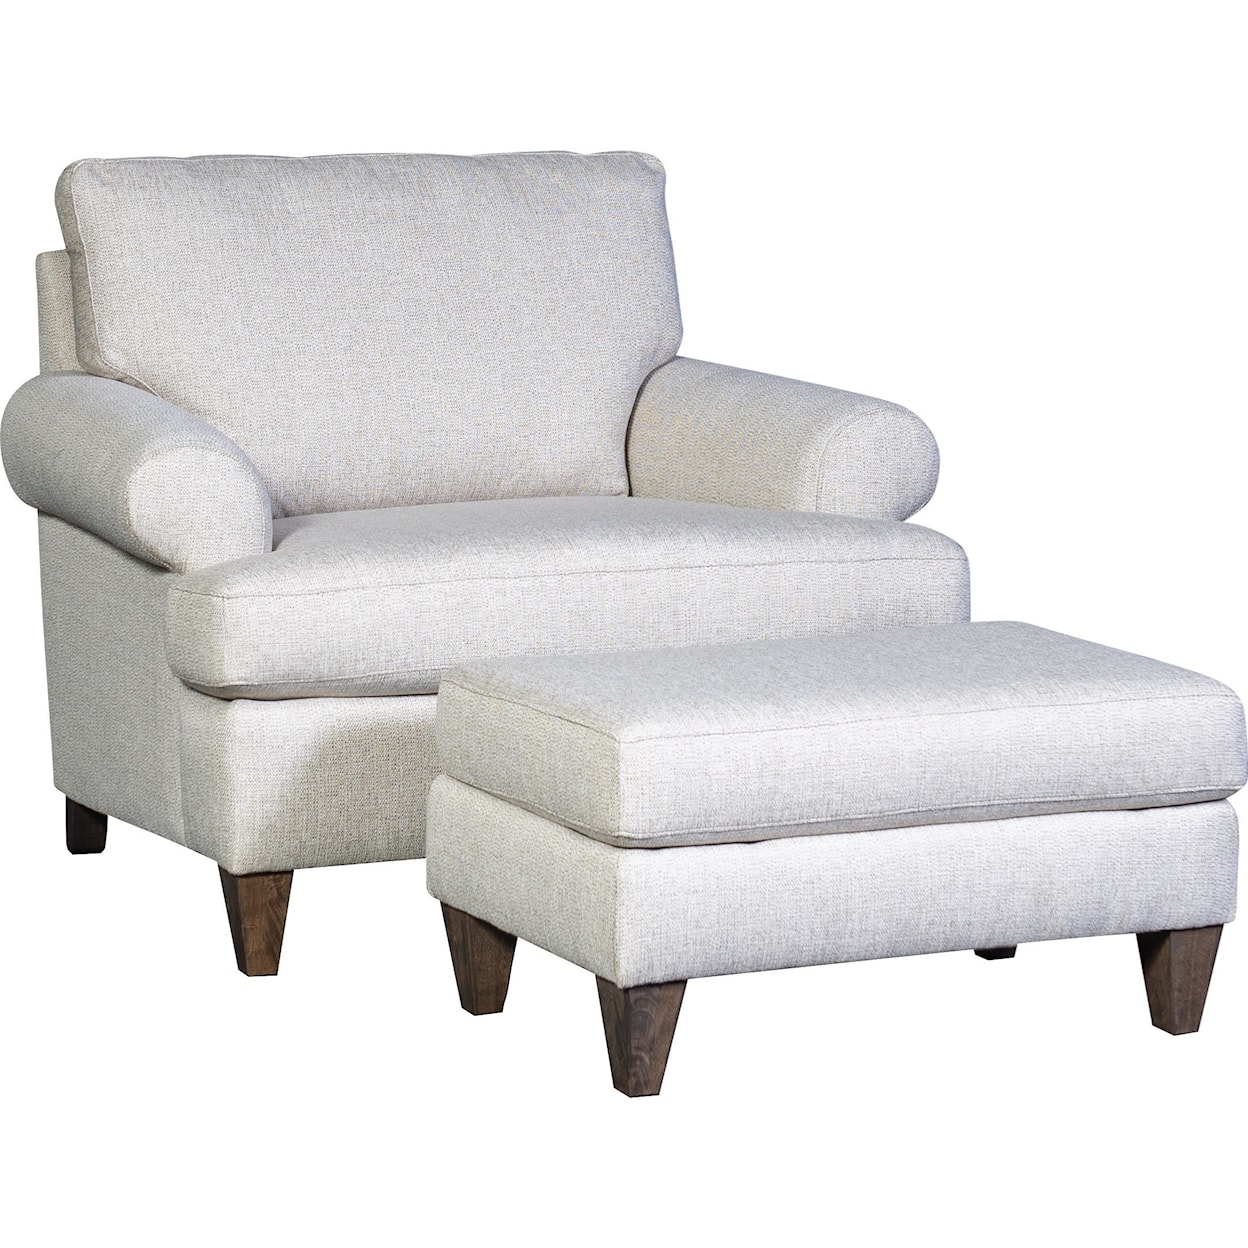 Mayo 3270 Chair and Ottoman